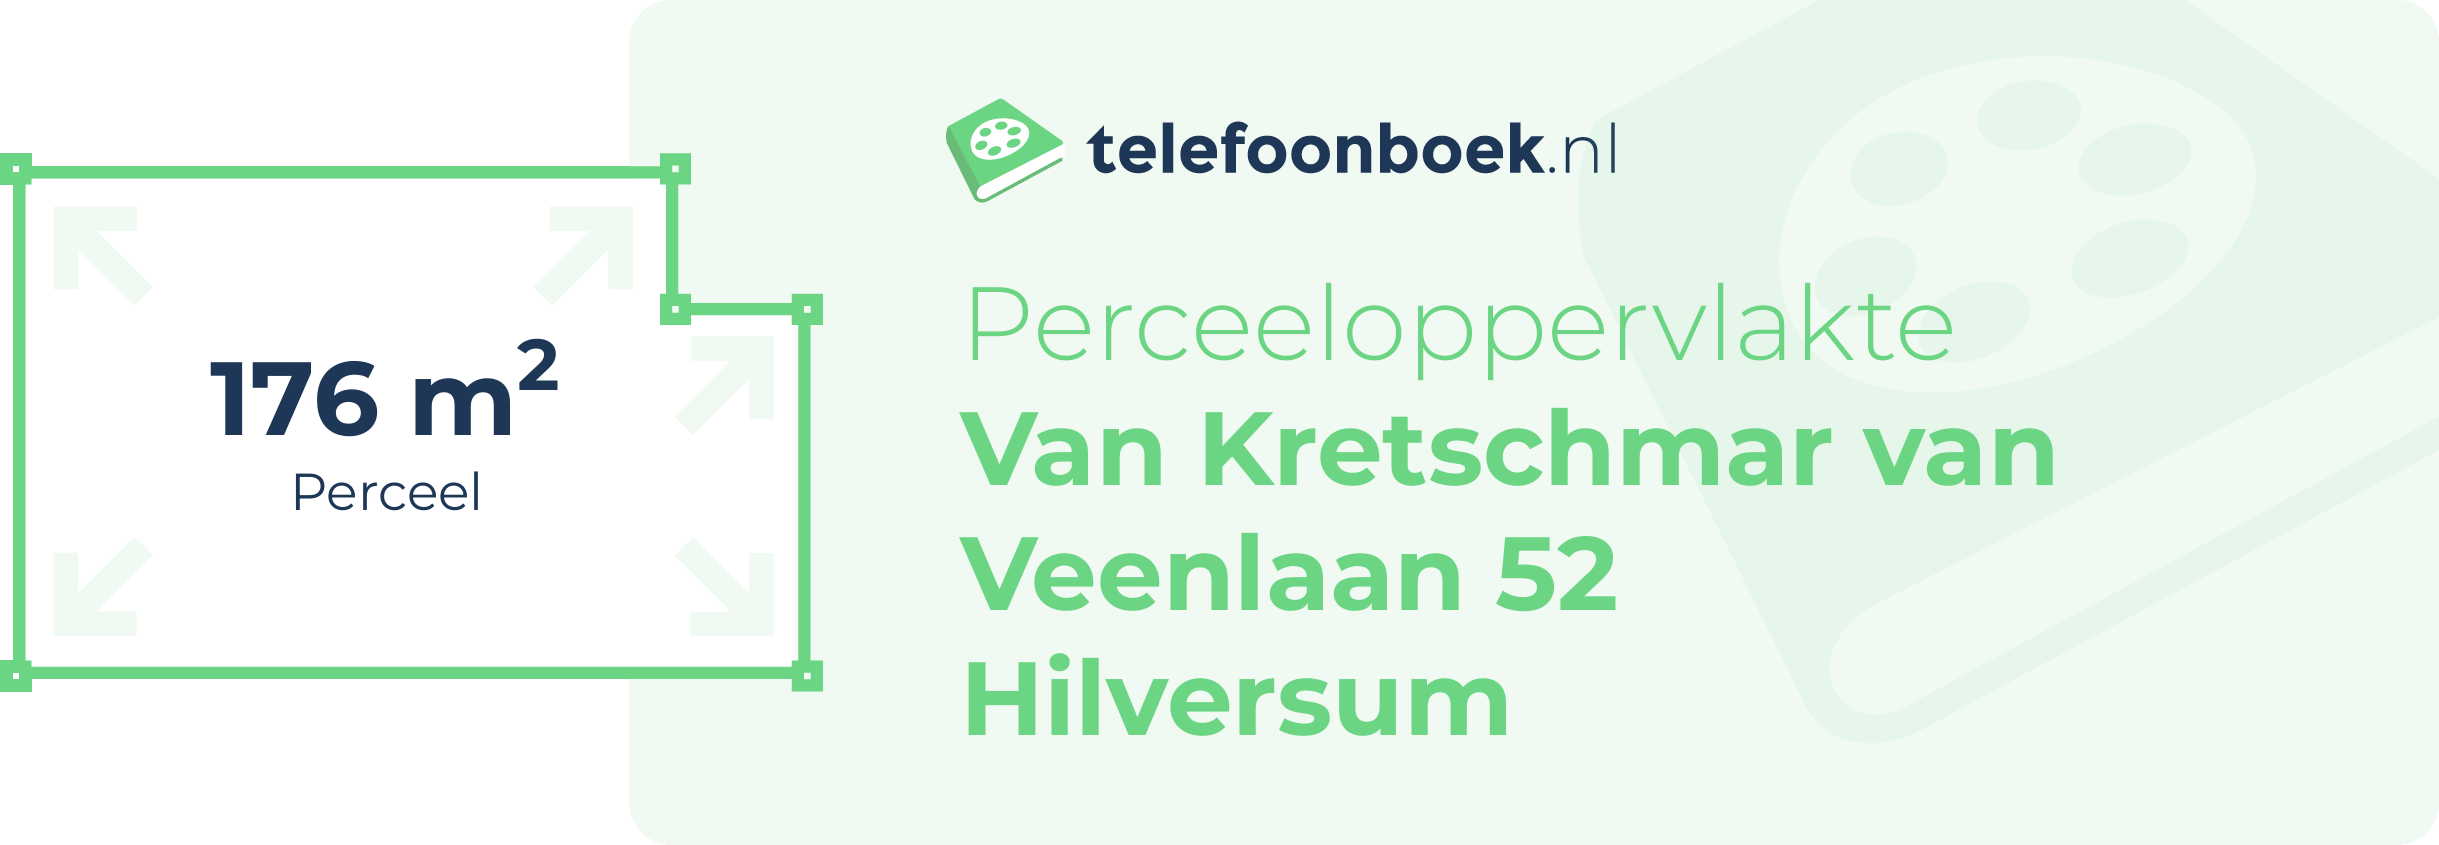 Perceeloppervlakte Van Kretschmar Van Veenlaan 52 Hilversum